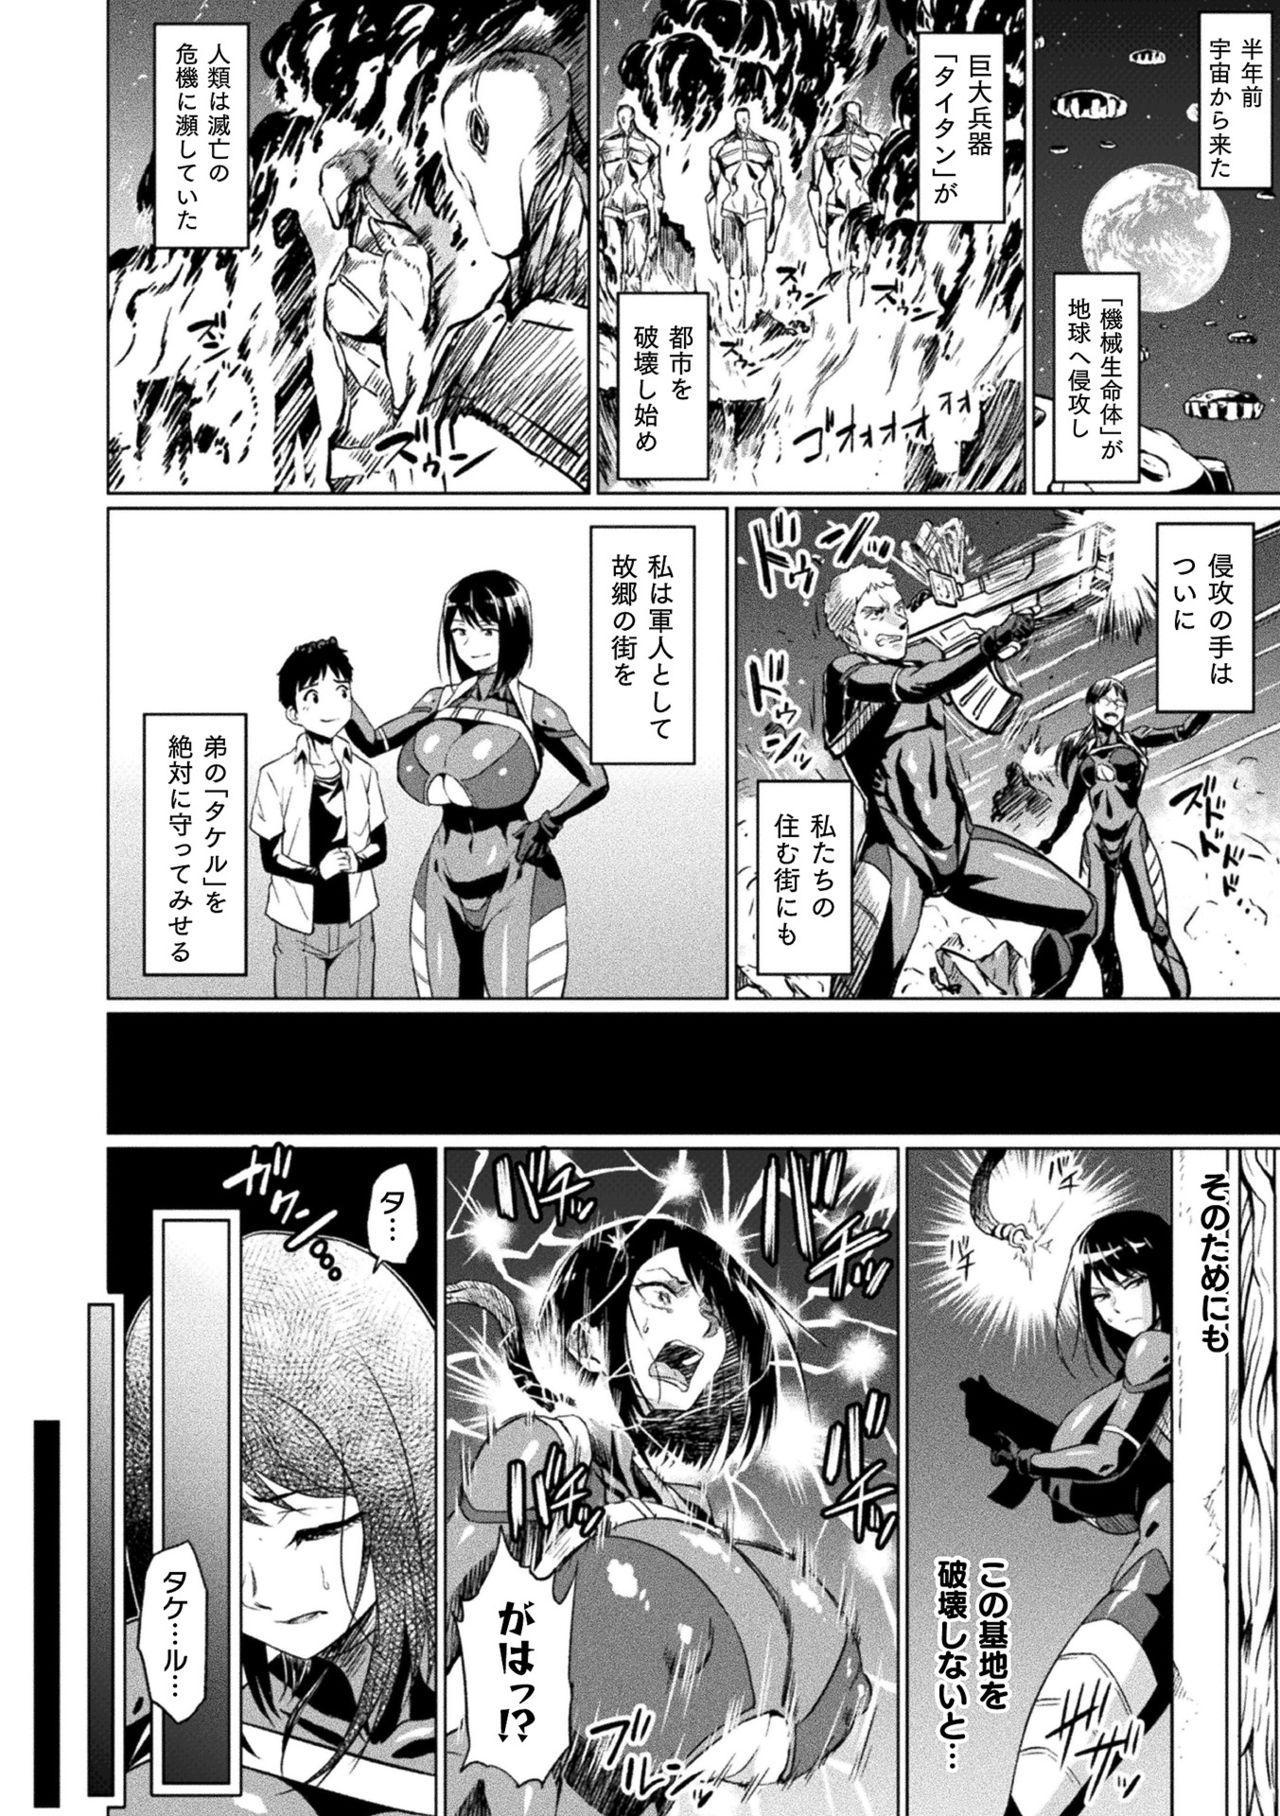 Insertion 2D Comic Magazine - Seitai Unit Kikaikan Vol.1 Bizarre - Page 4